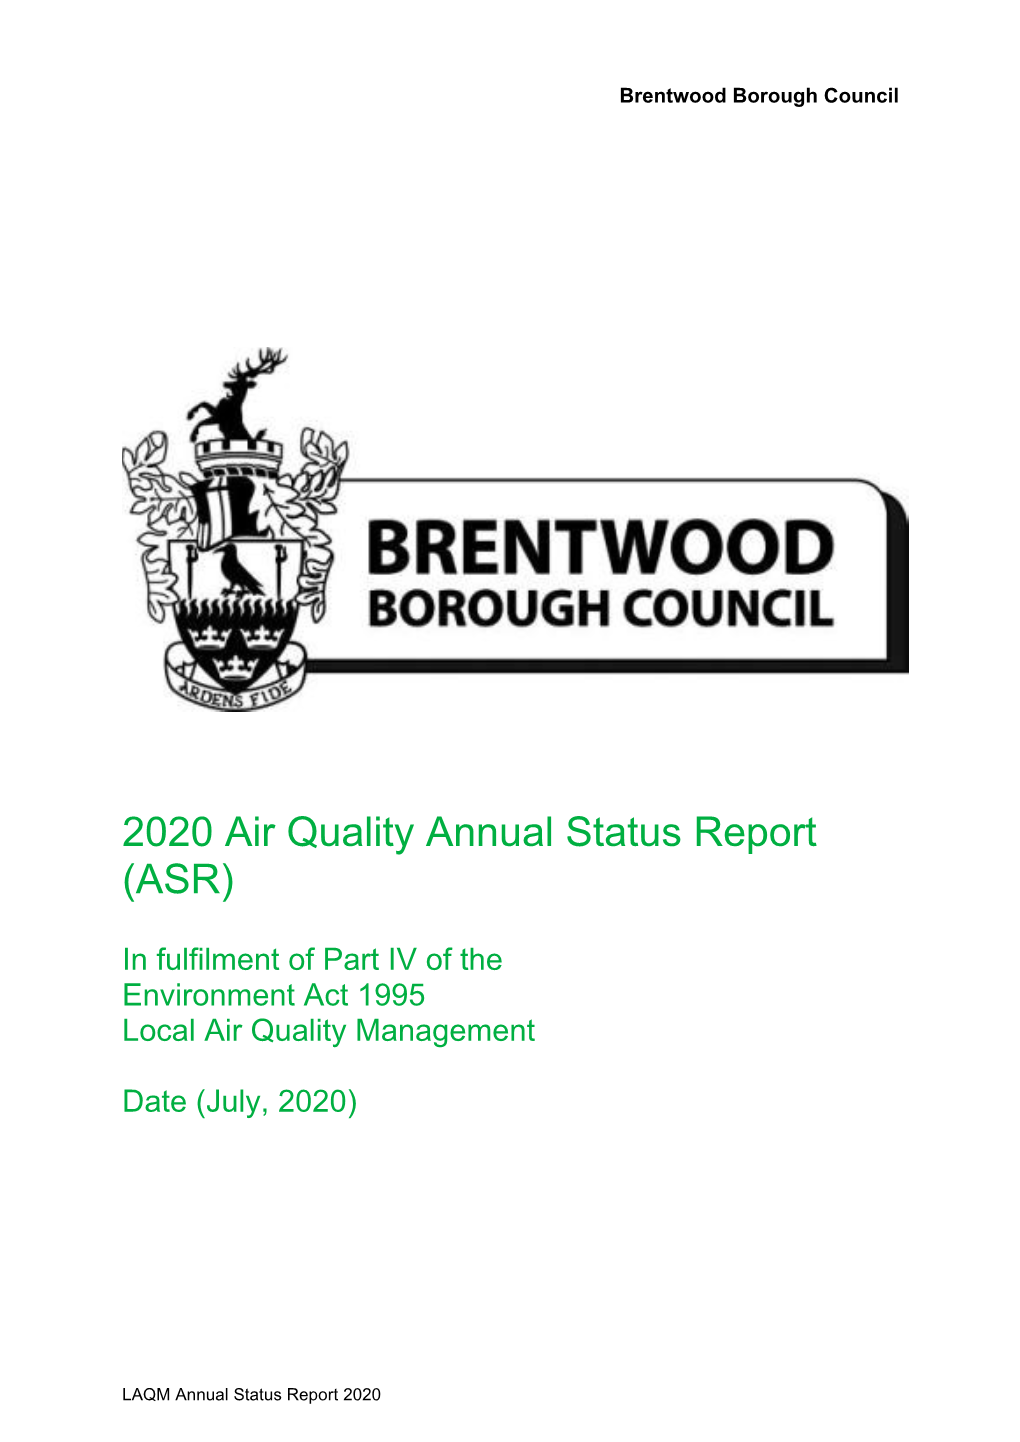 Brentwood Borough Council 2020 Air Quality Annual Status